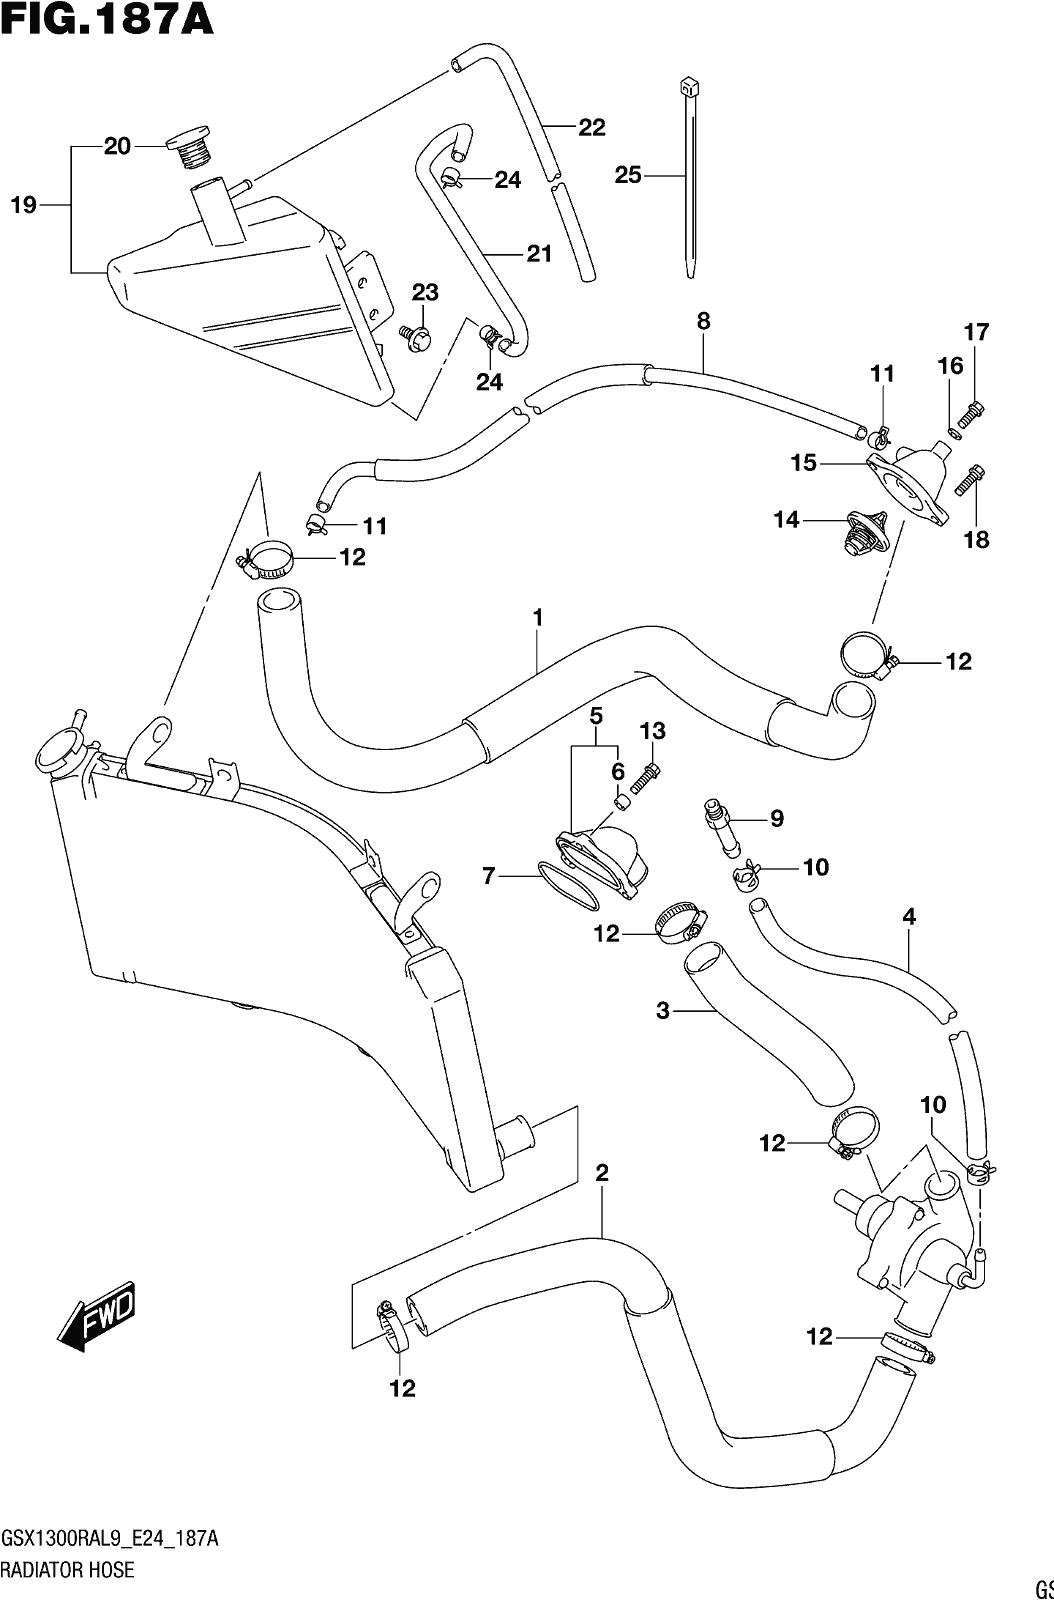 Fig.187a Radiator Hose